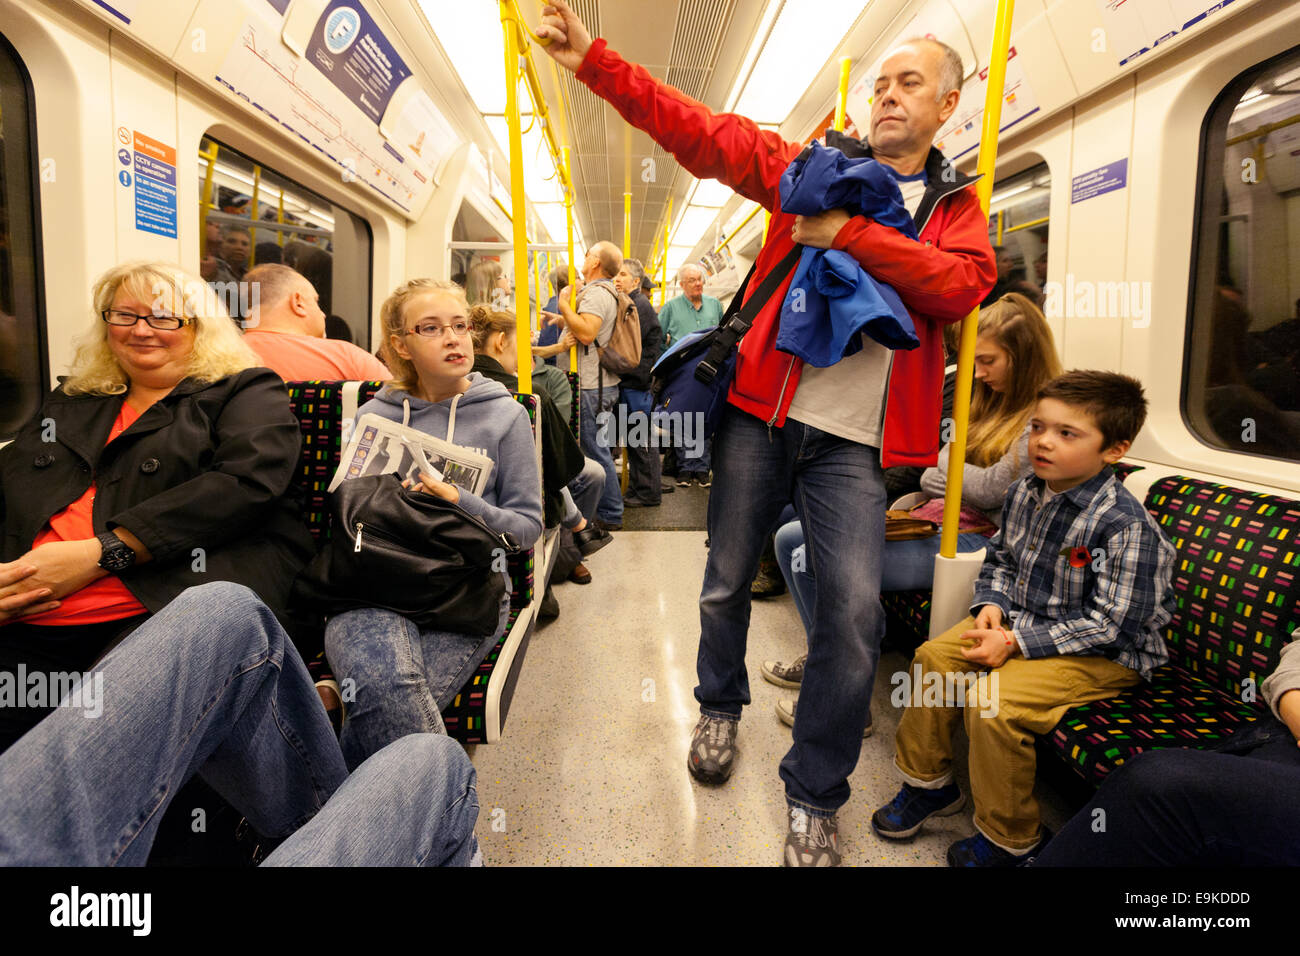 Familles avec enfants voyageant en calèche sur un métro de Londres, Londres Royaume-Uni Banque D'Images